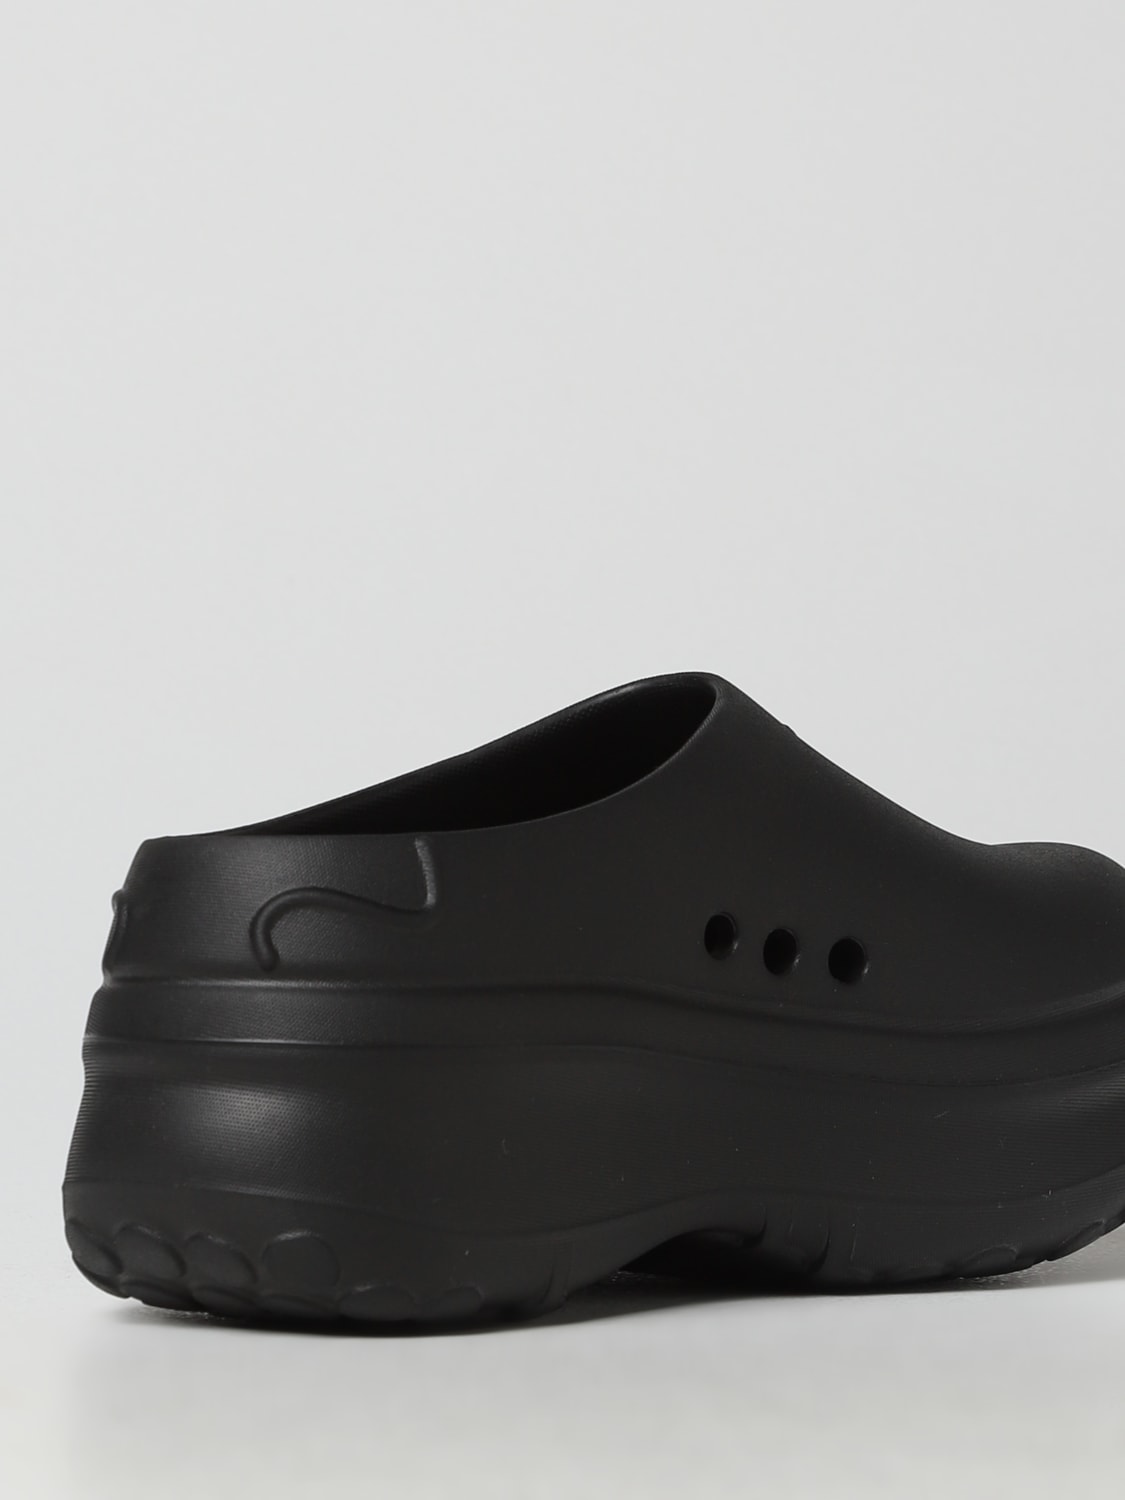 ADIDAS ORIGINALS: flat shoes for woman - Black | Adidas Originals flat ...